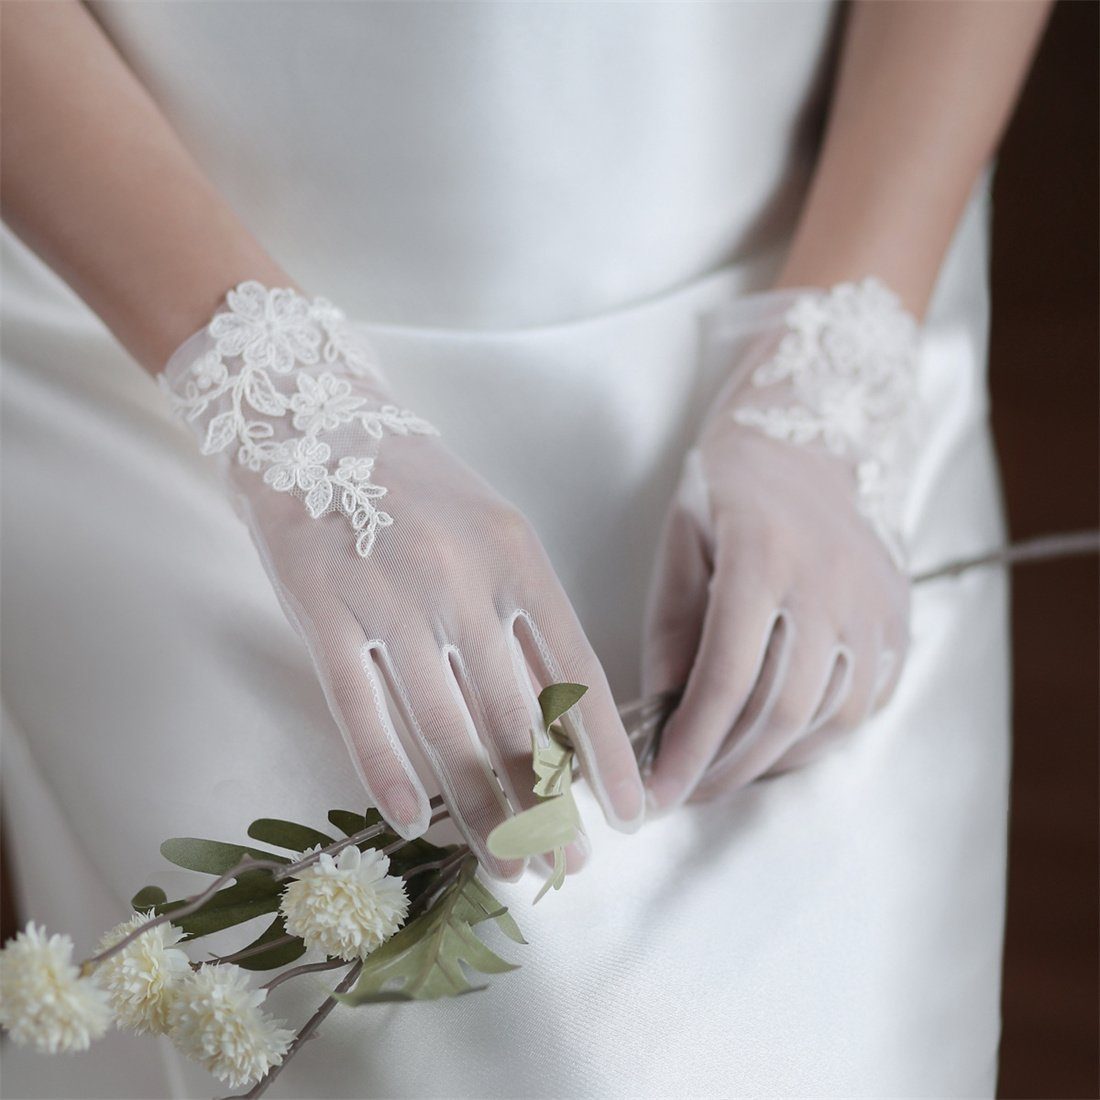 DÖRÖY Abendhandschuhe Braut Hochzeit Party Handschuhe, Weiß Kurz Spitze Party Handschuhe